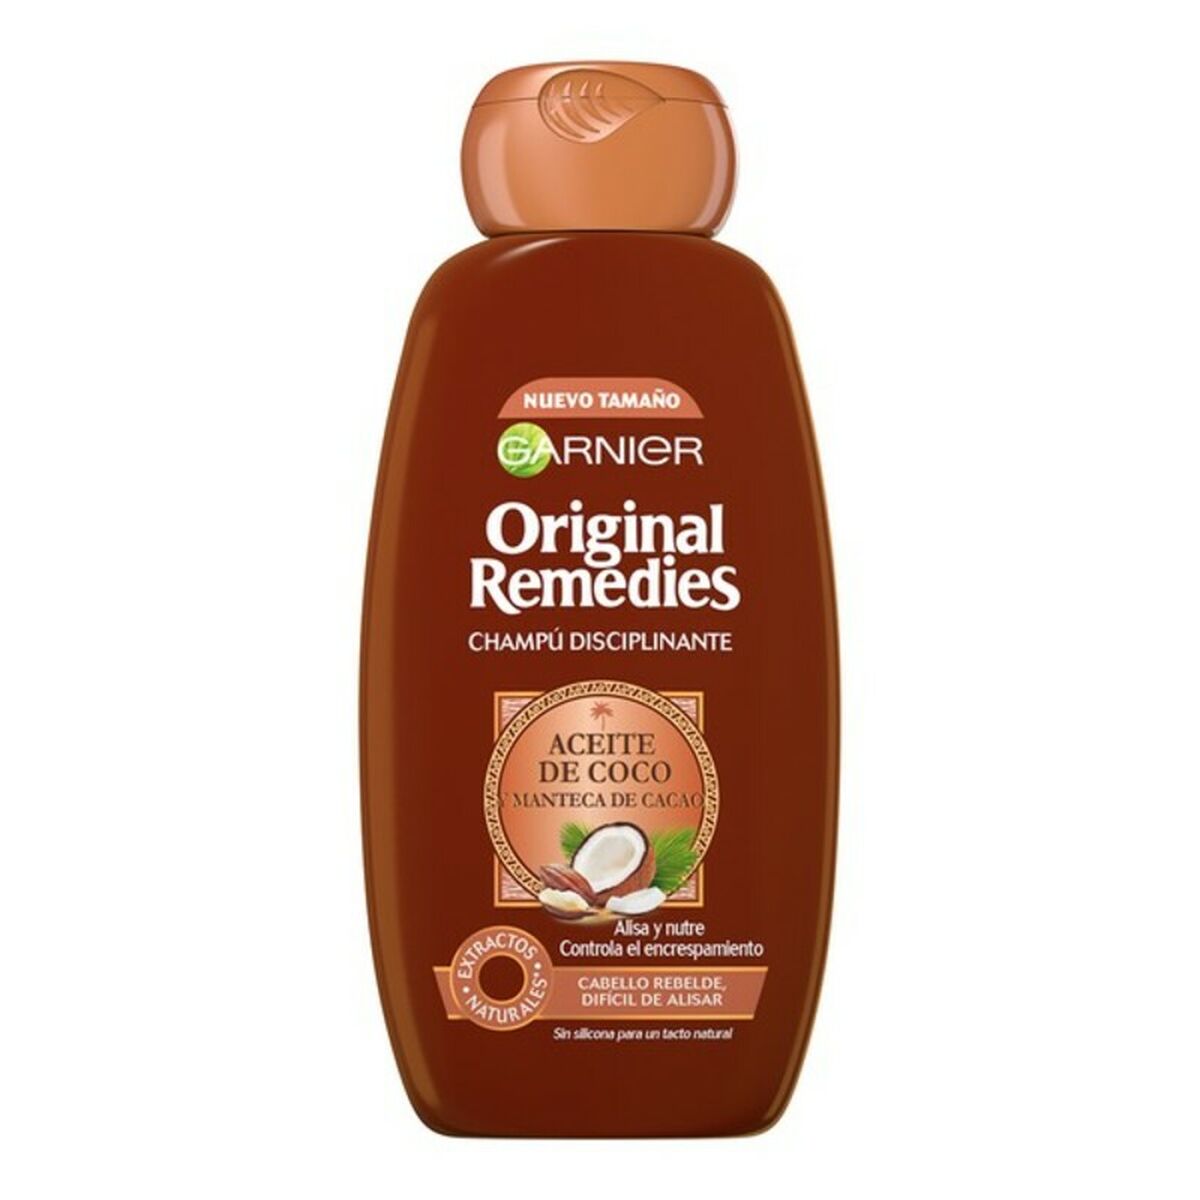 Разглаживающий волосы шампунь Original Remedies L'Oreal Make Up (300 ml) (300 ml)